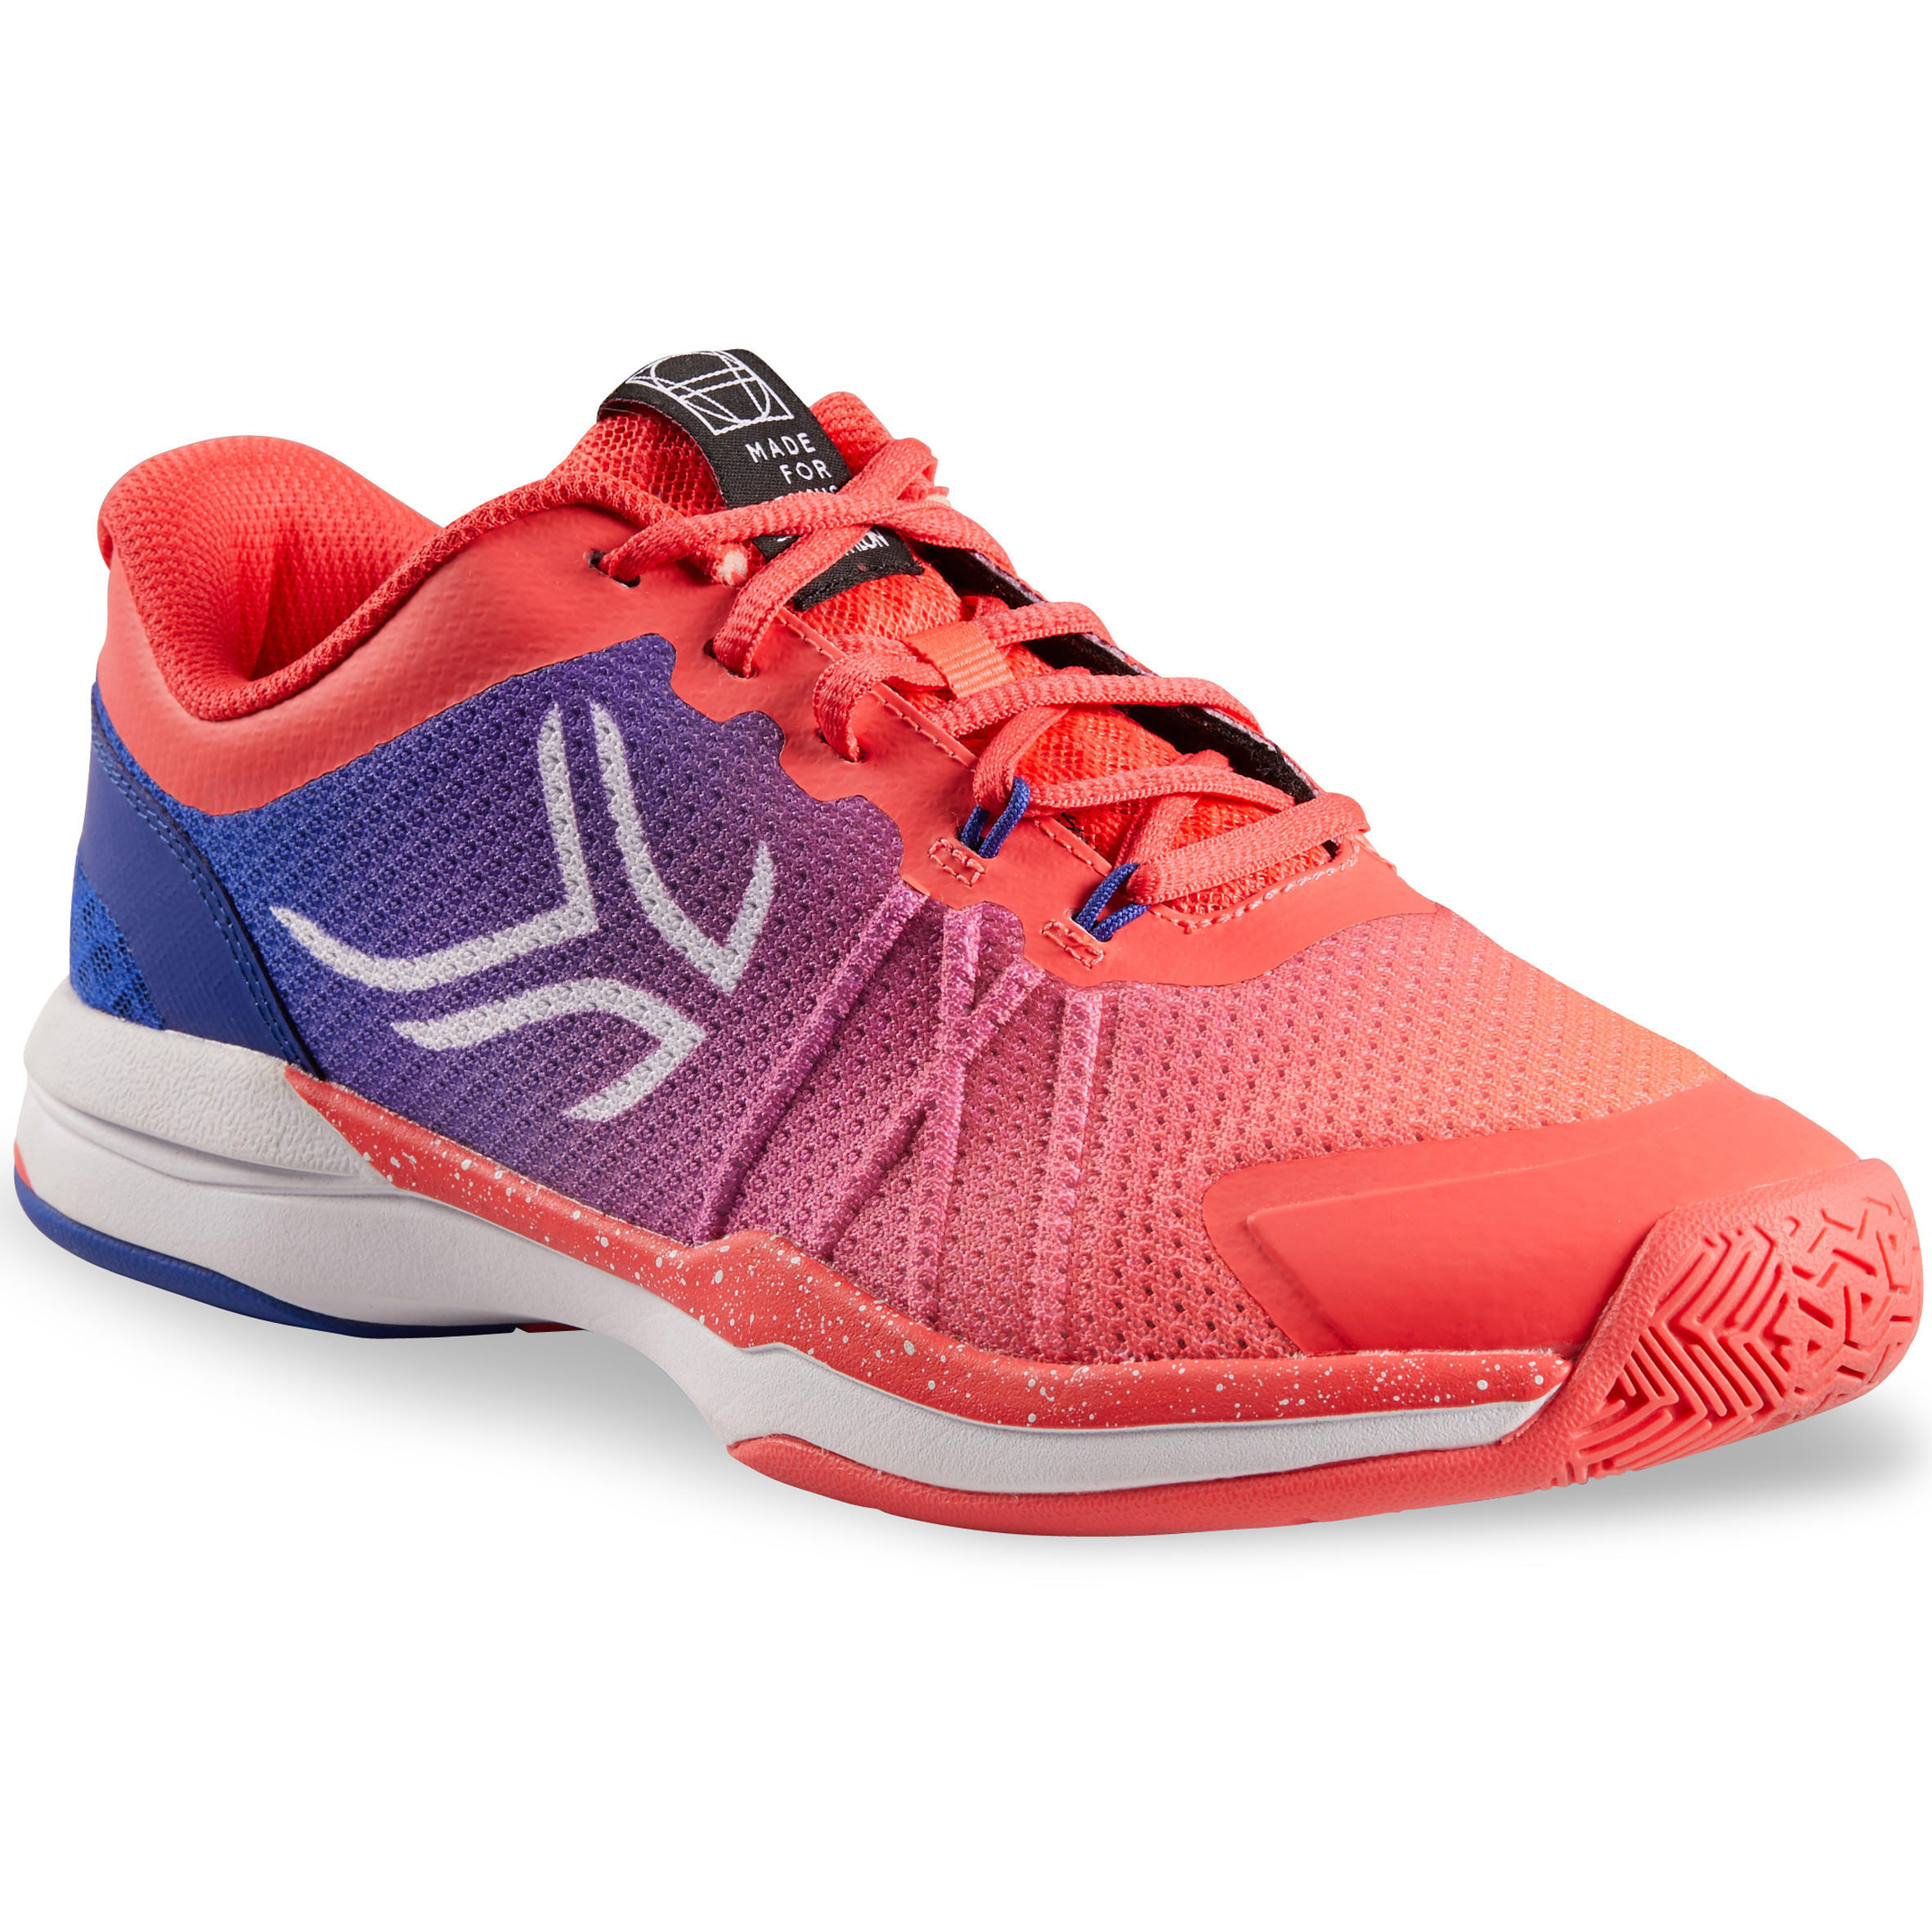 ARTENGO TS590 Women's Tennis Shoes - Pink